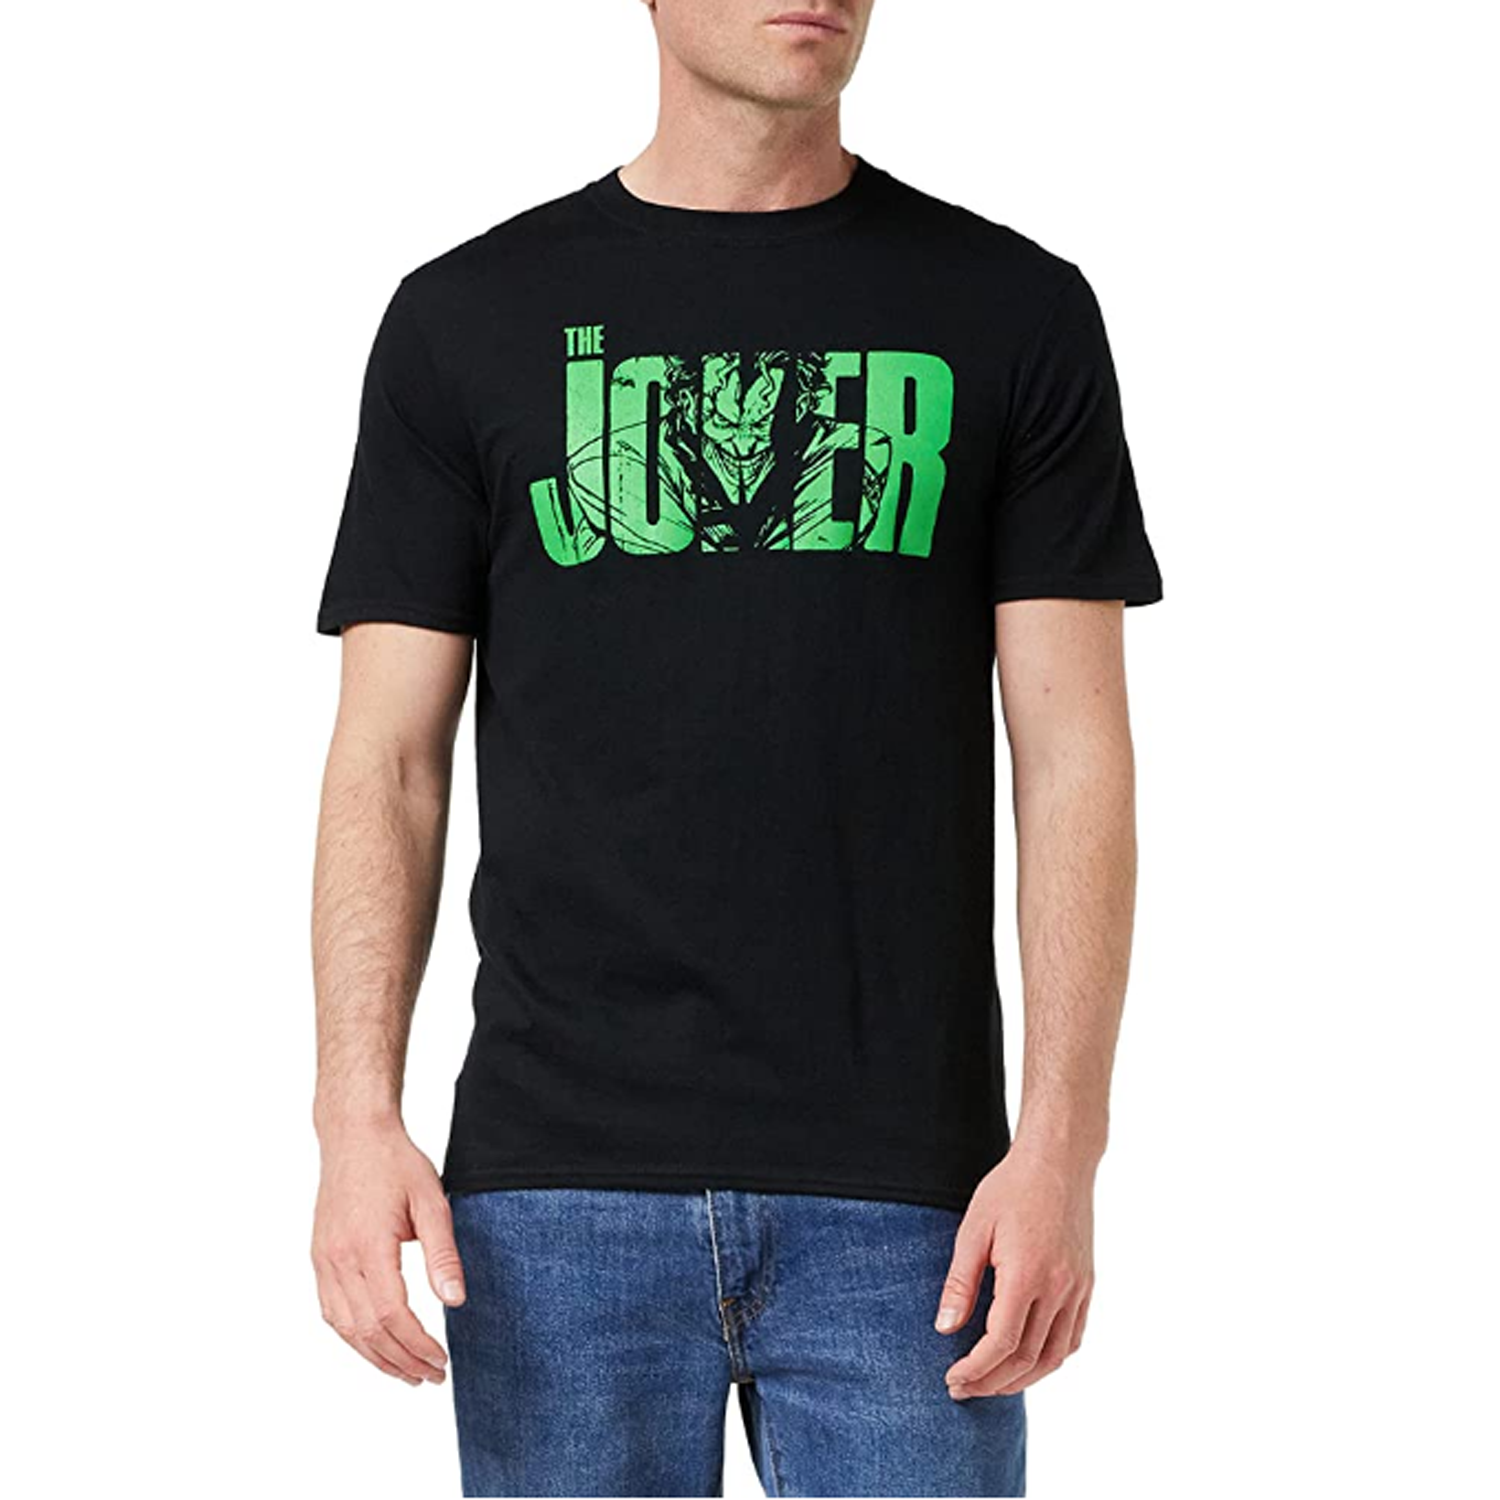 The Joker Camiseta para Hombre